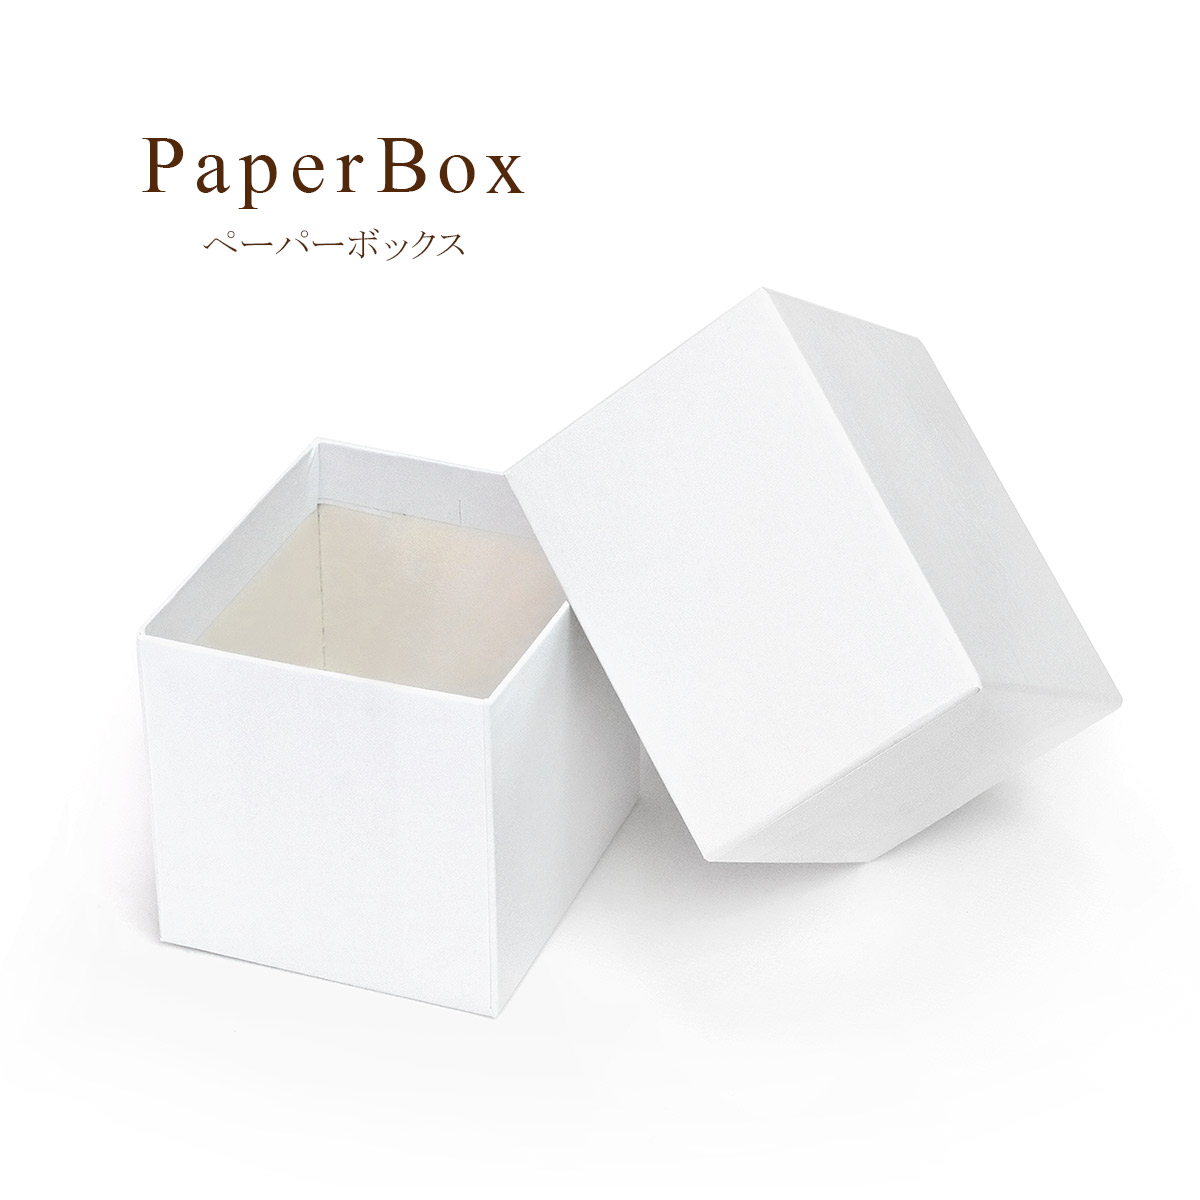 ペーパーボックス/小物やアクセサリーケースに★フリーボックス★ホワイトの貼り箱/白色 sp-121